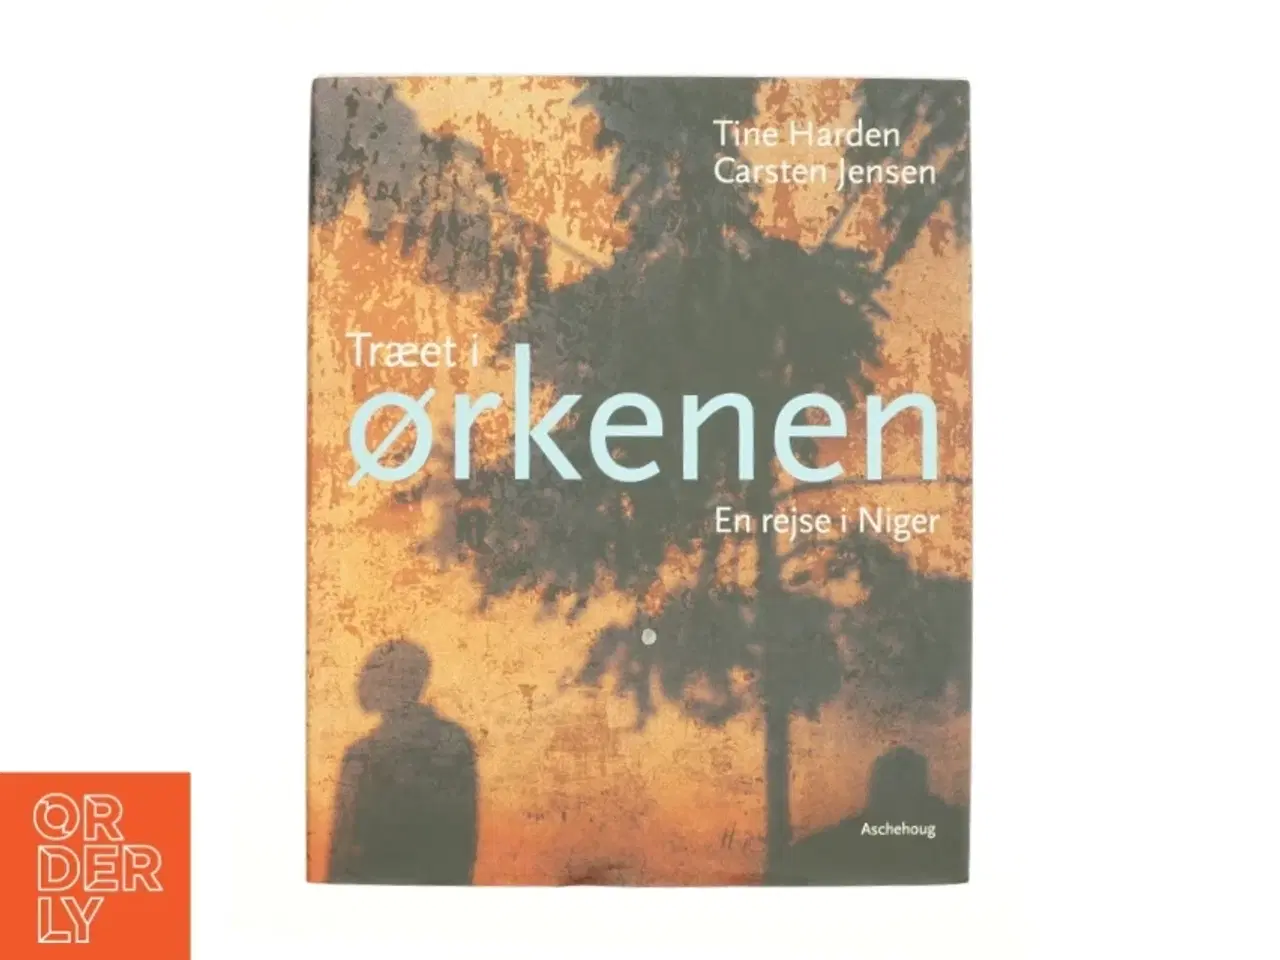 Billede 1 - Træet i ørkenen - En rejse i Niger af Trine Harden og Carsten Jensen (Bog)